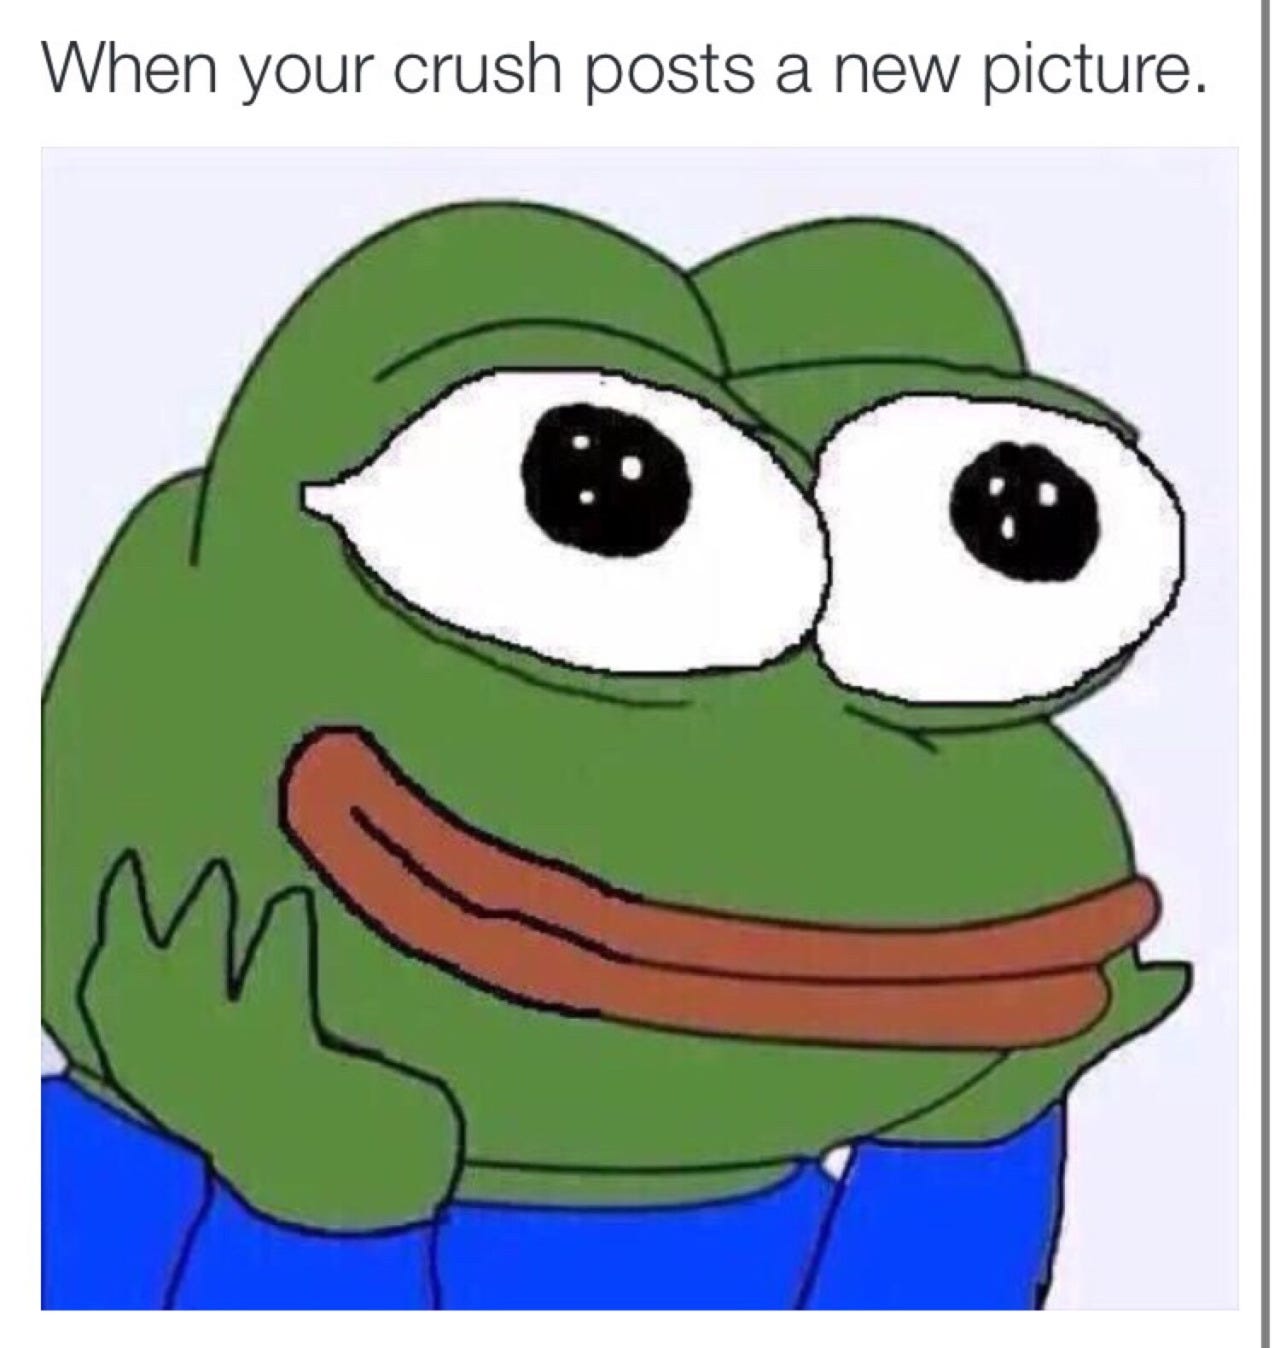 Frog Face Meme